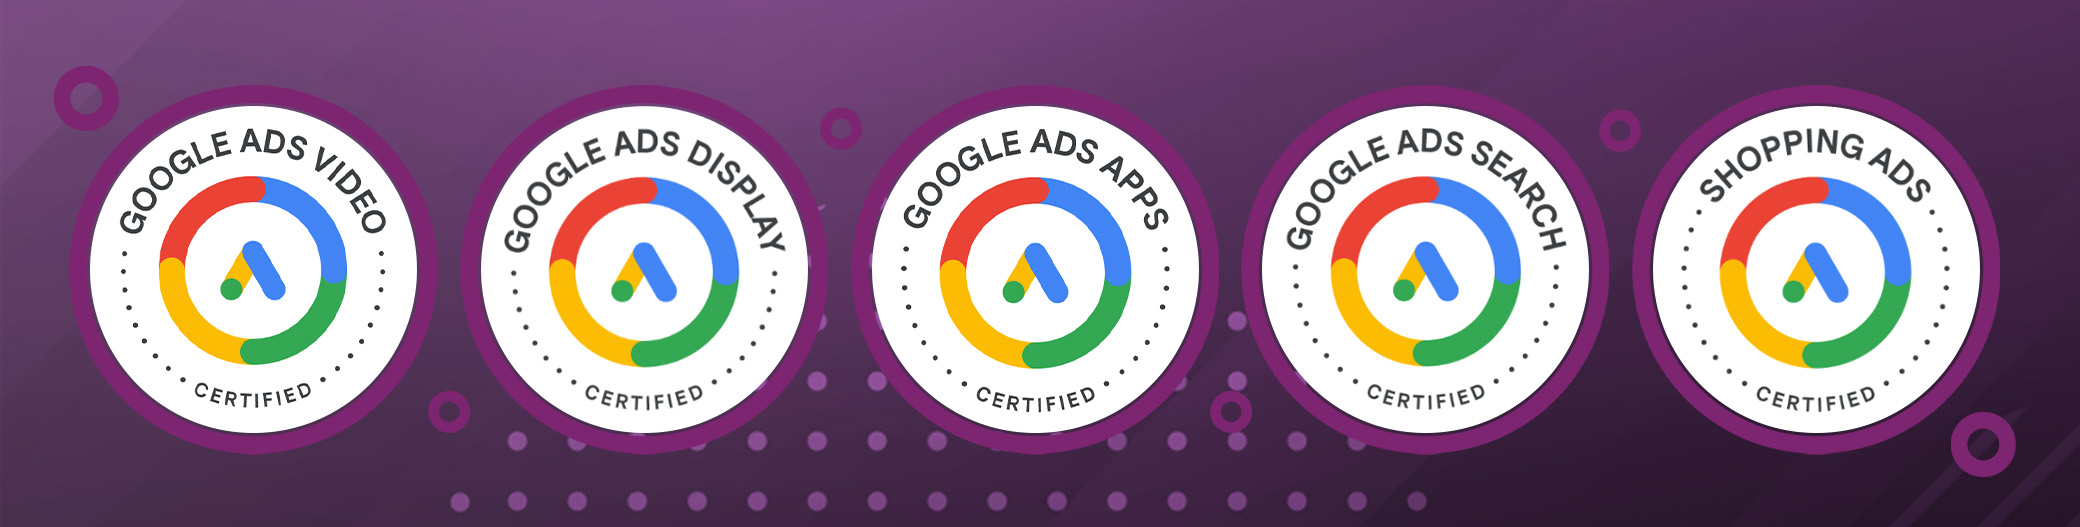 Certificazioni Google ADS